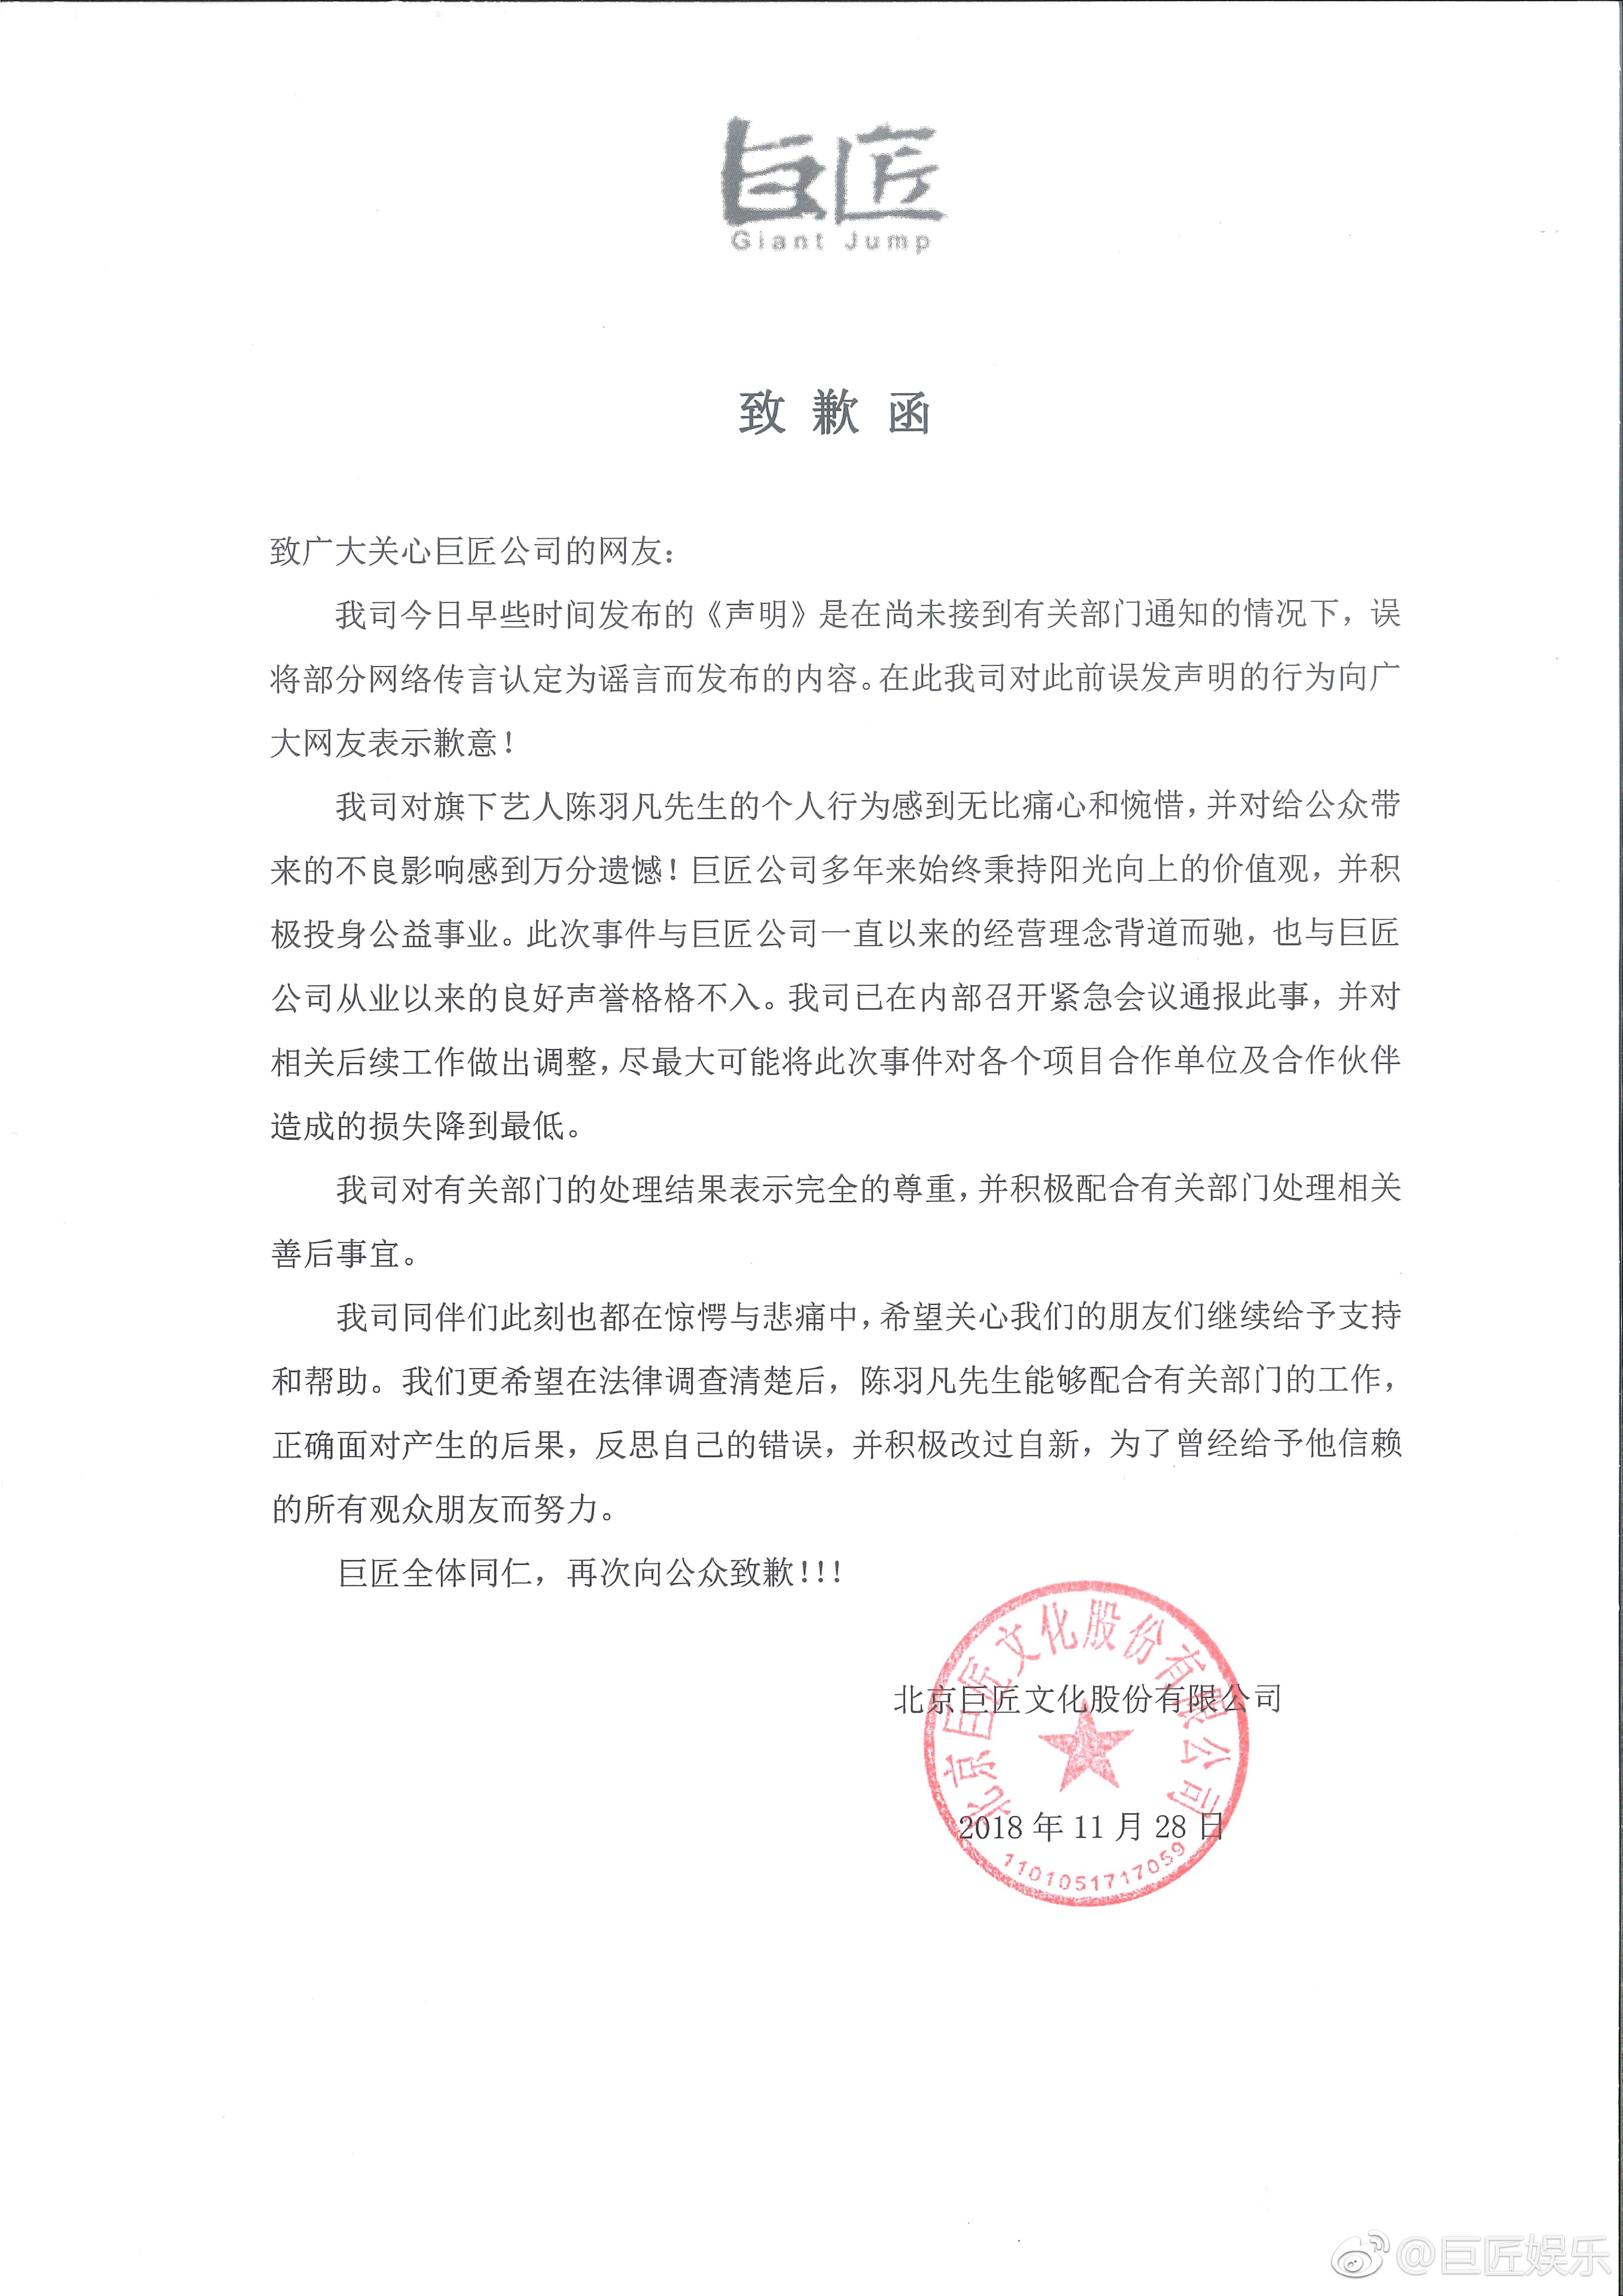 陈羽凡公司就其吸毒事件及误发辟谣声明致歉